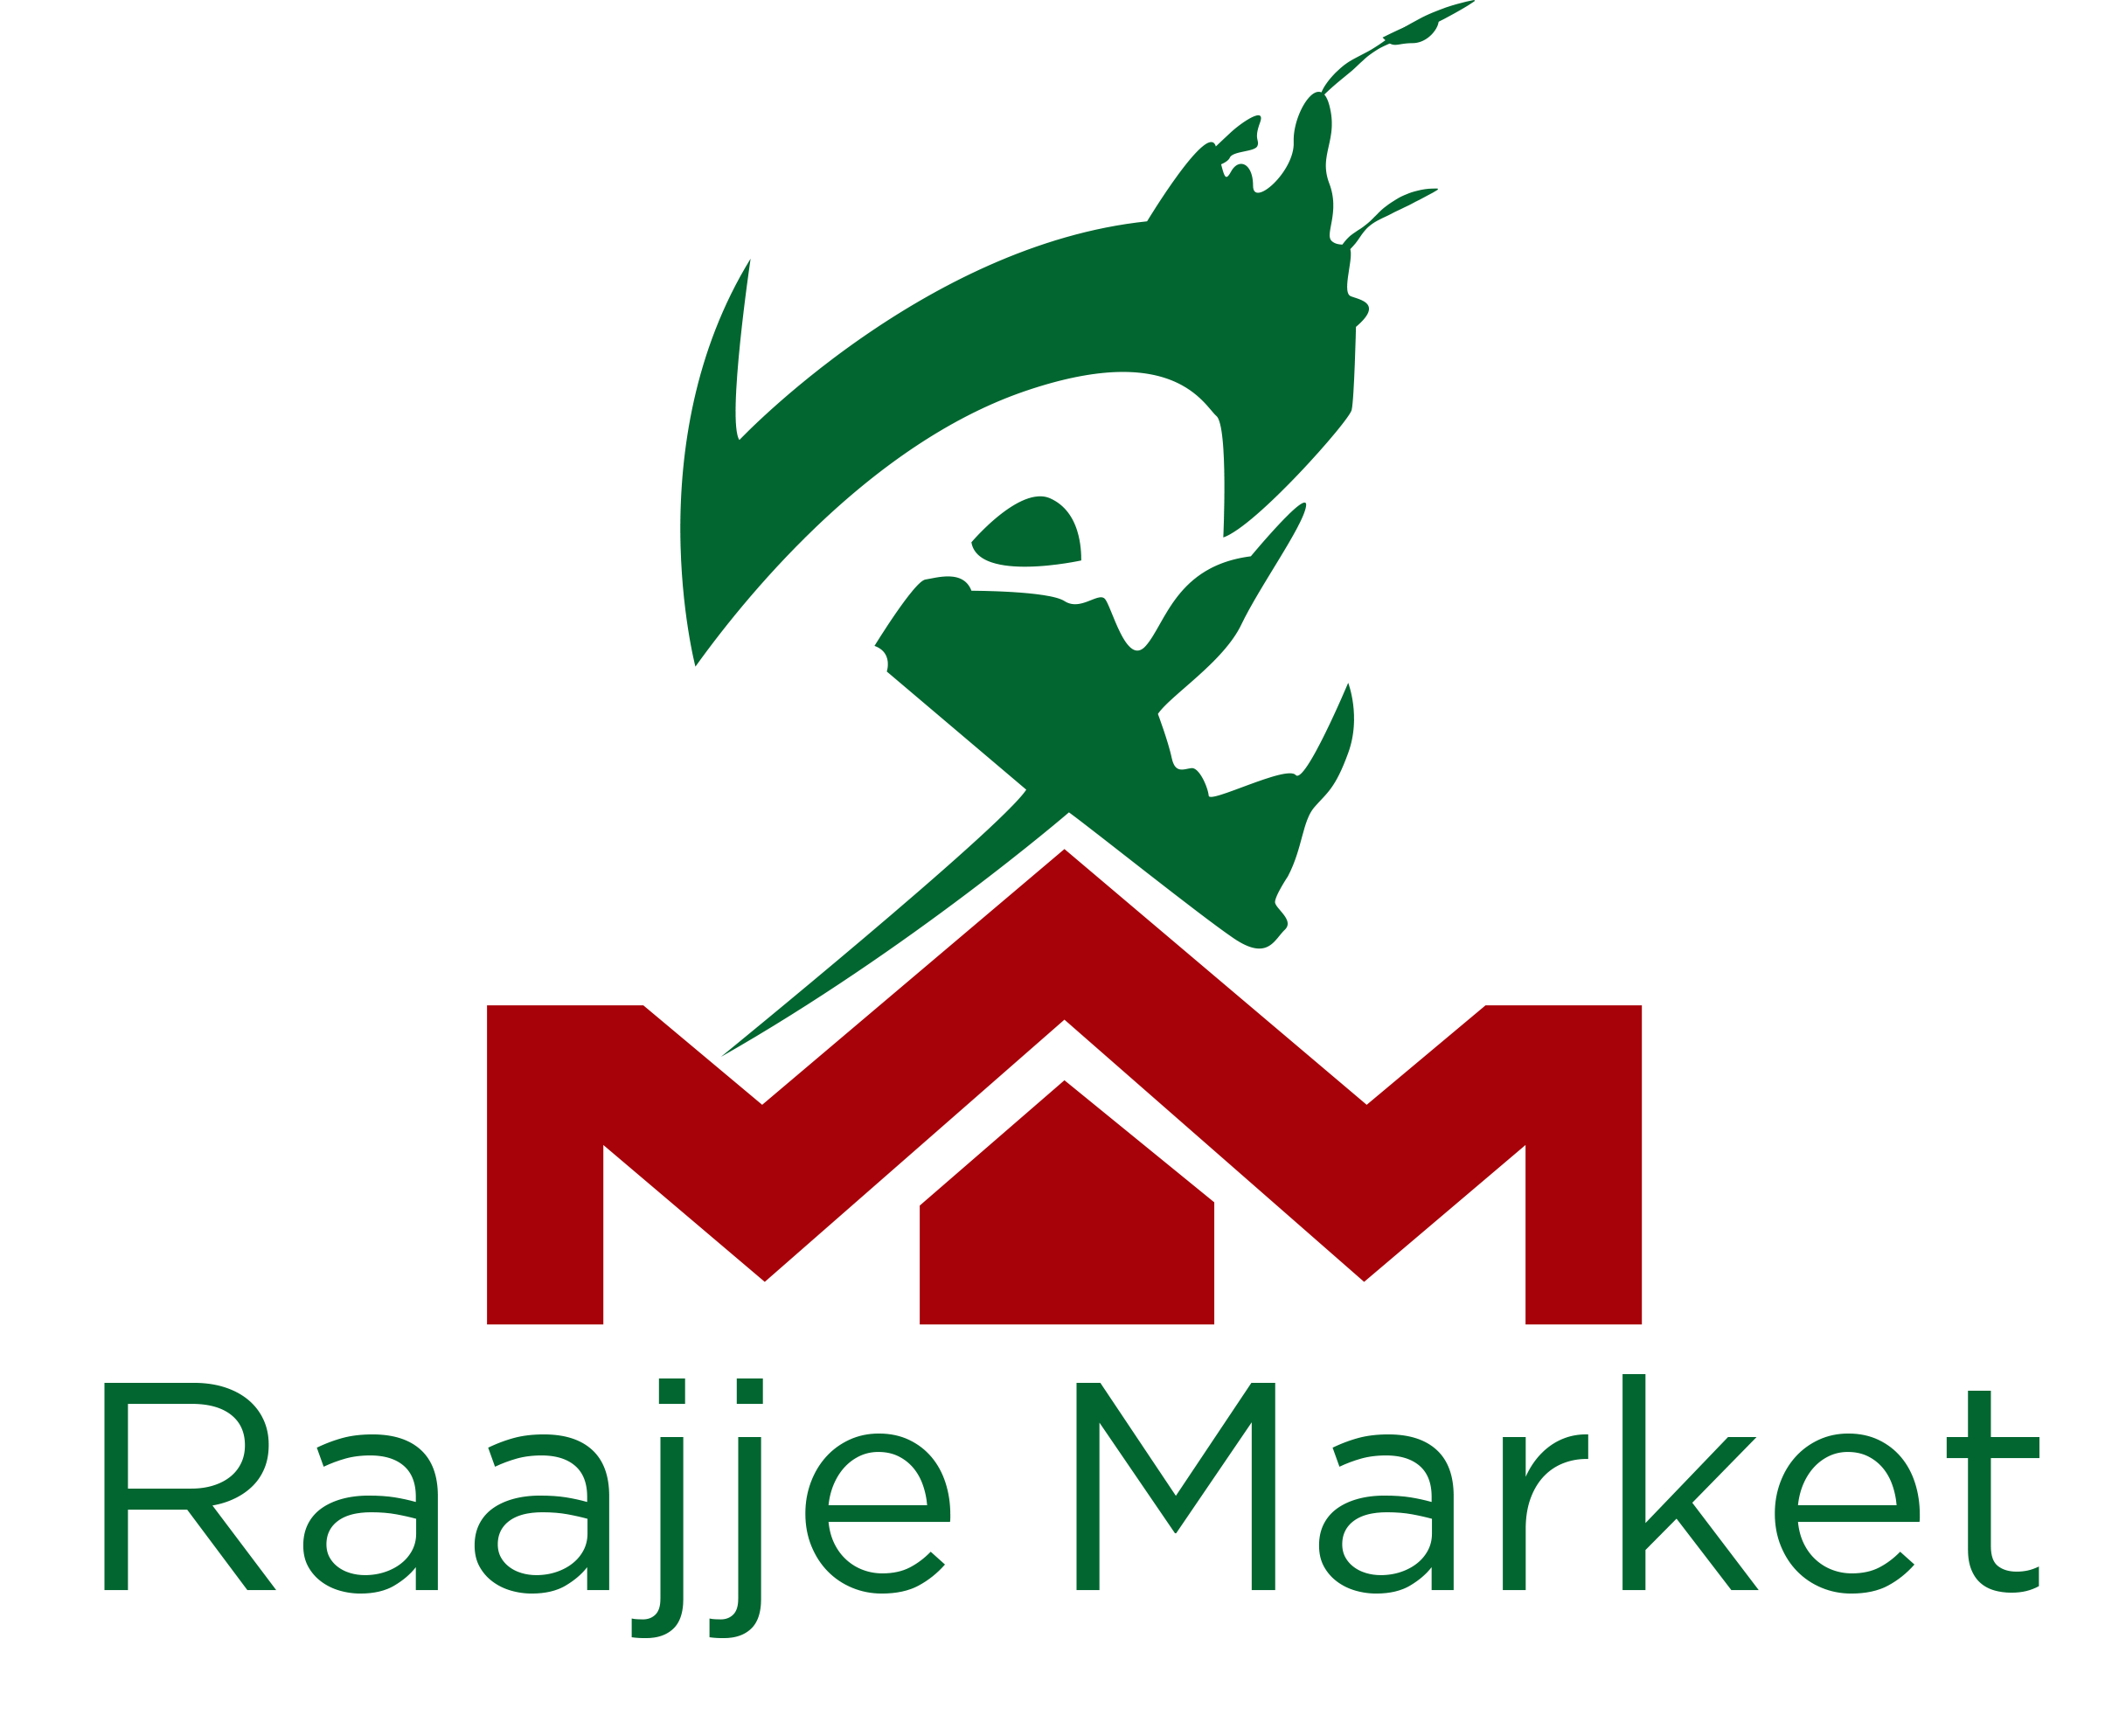 Contact Raajje Market